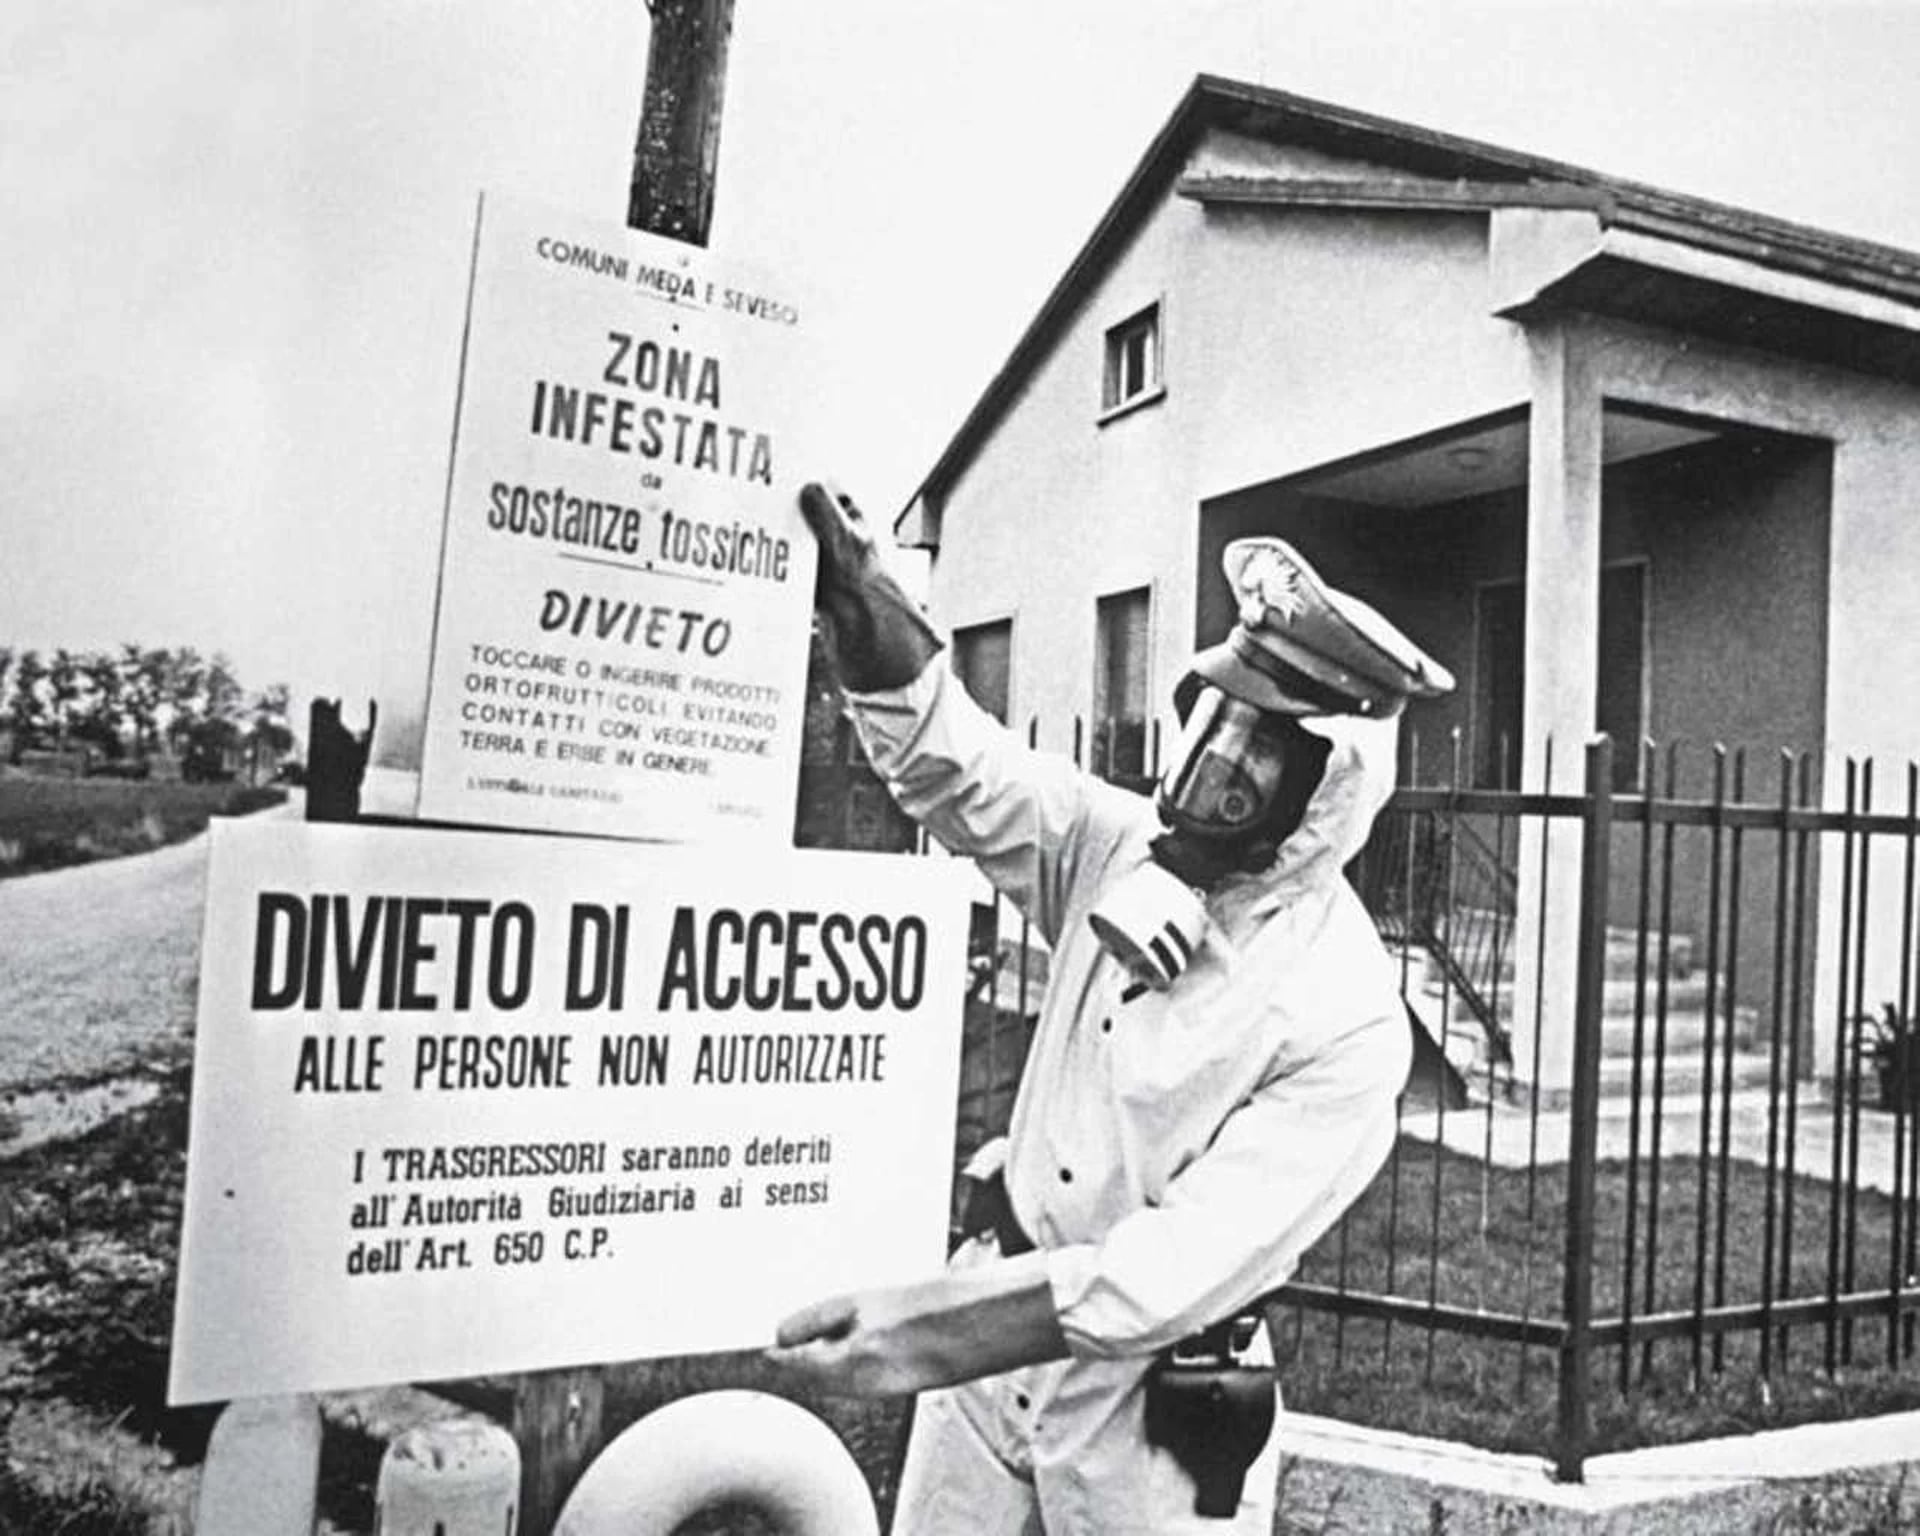 No murió nadie, pero 35 años después del desastre la tasa de tumores en la zona de Seveso es superior a la del resto del norte de Italia